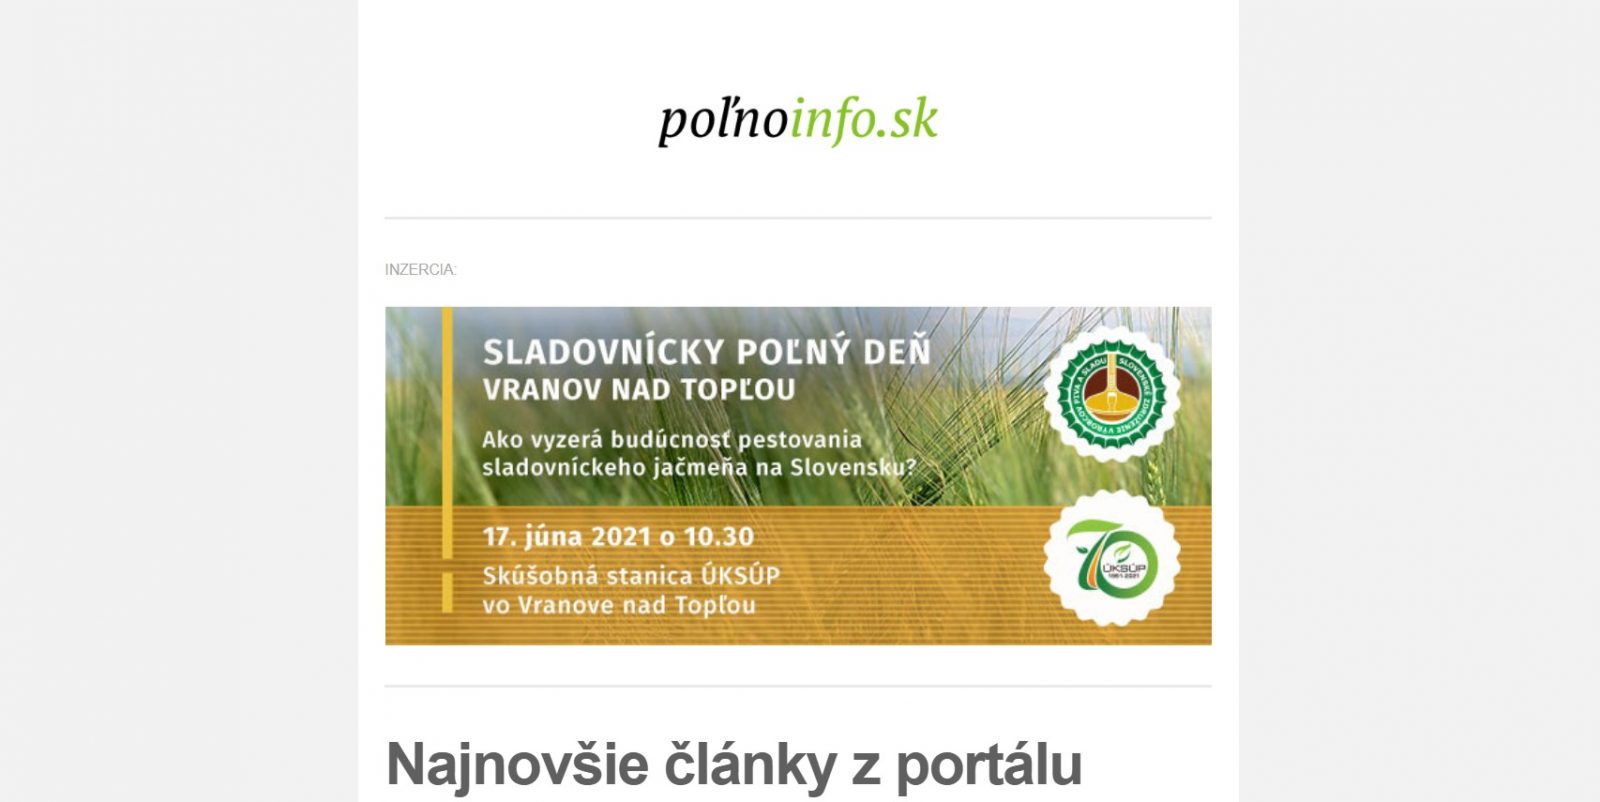 Polnoinfo.sk: Ako publikovať reklamný baner v newslettri